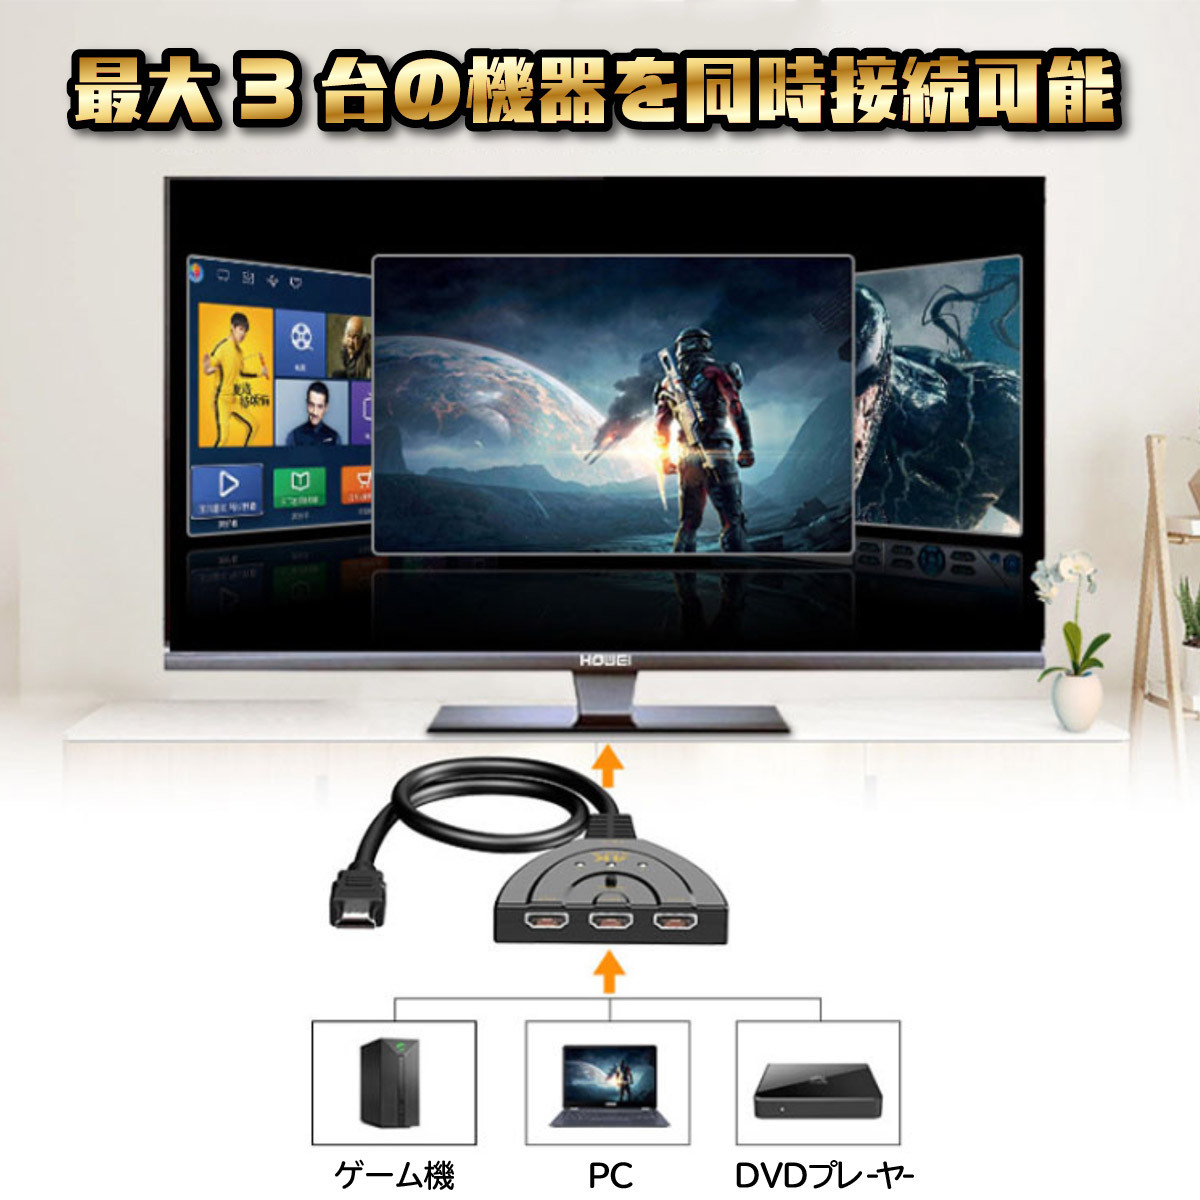 HDMI дистрибьютор переключатель изменение селектор переключатель адаптор дисплей несколько 3 ввод 1 мощность женский - мужской повышение HDMI переключатель .- ТВ-монитор игра 